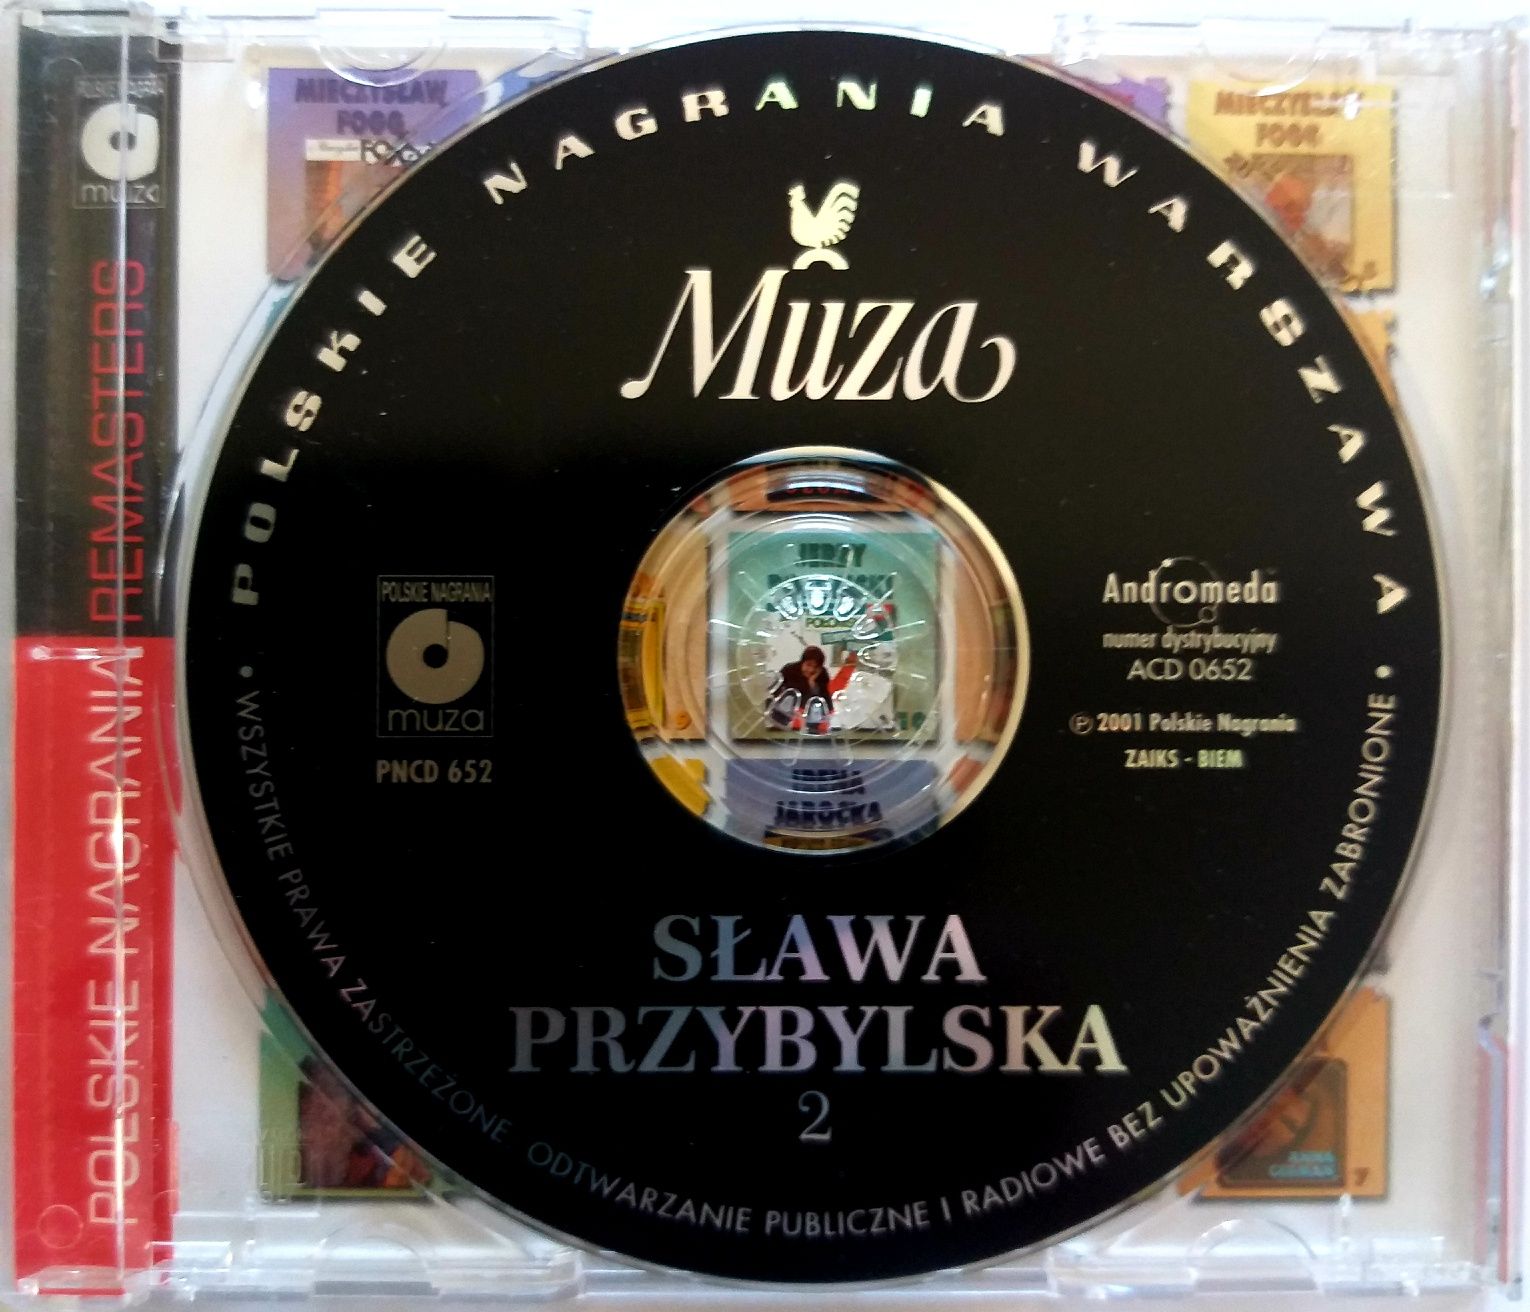 Sława Przybylska 2 2001r